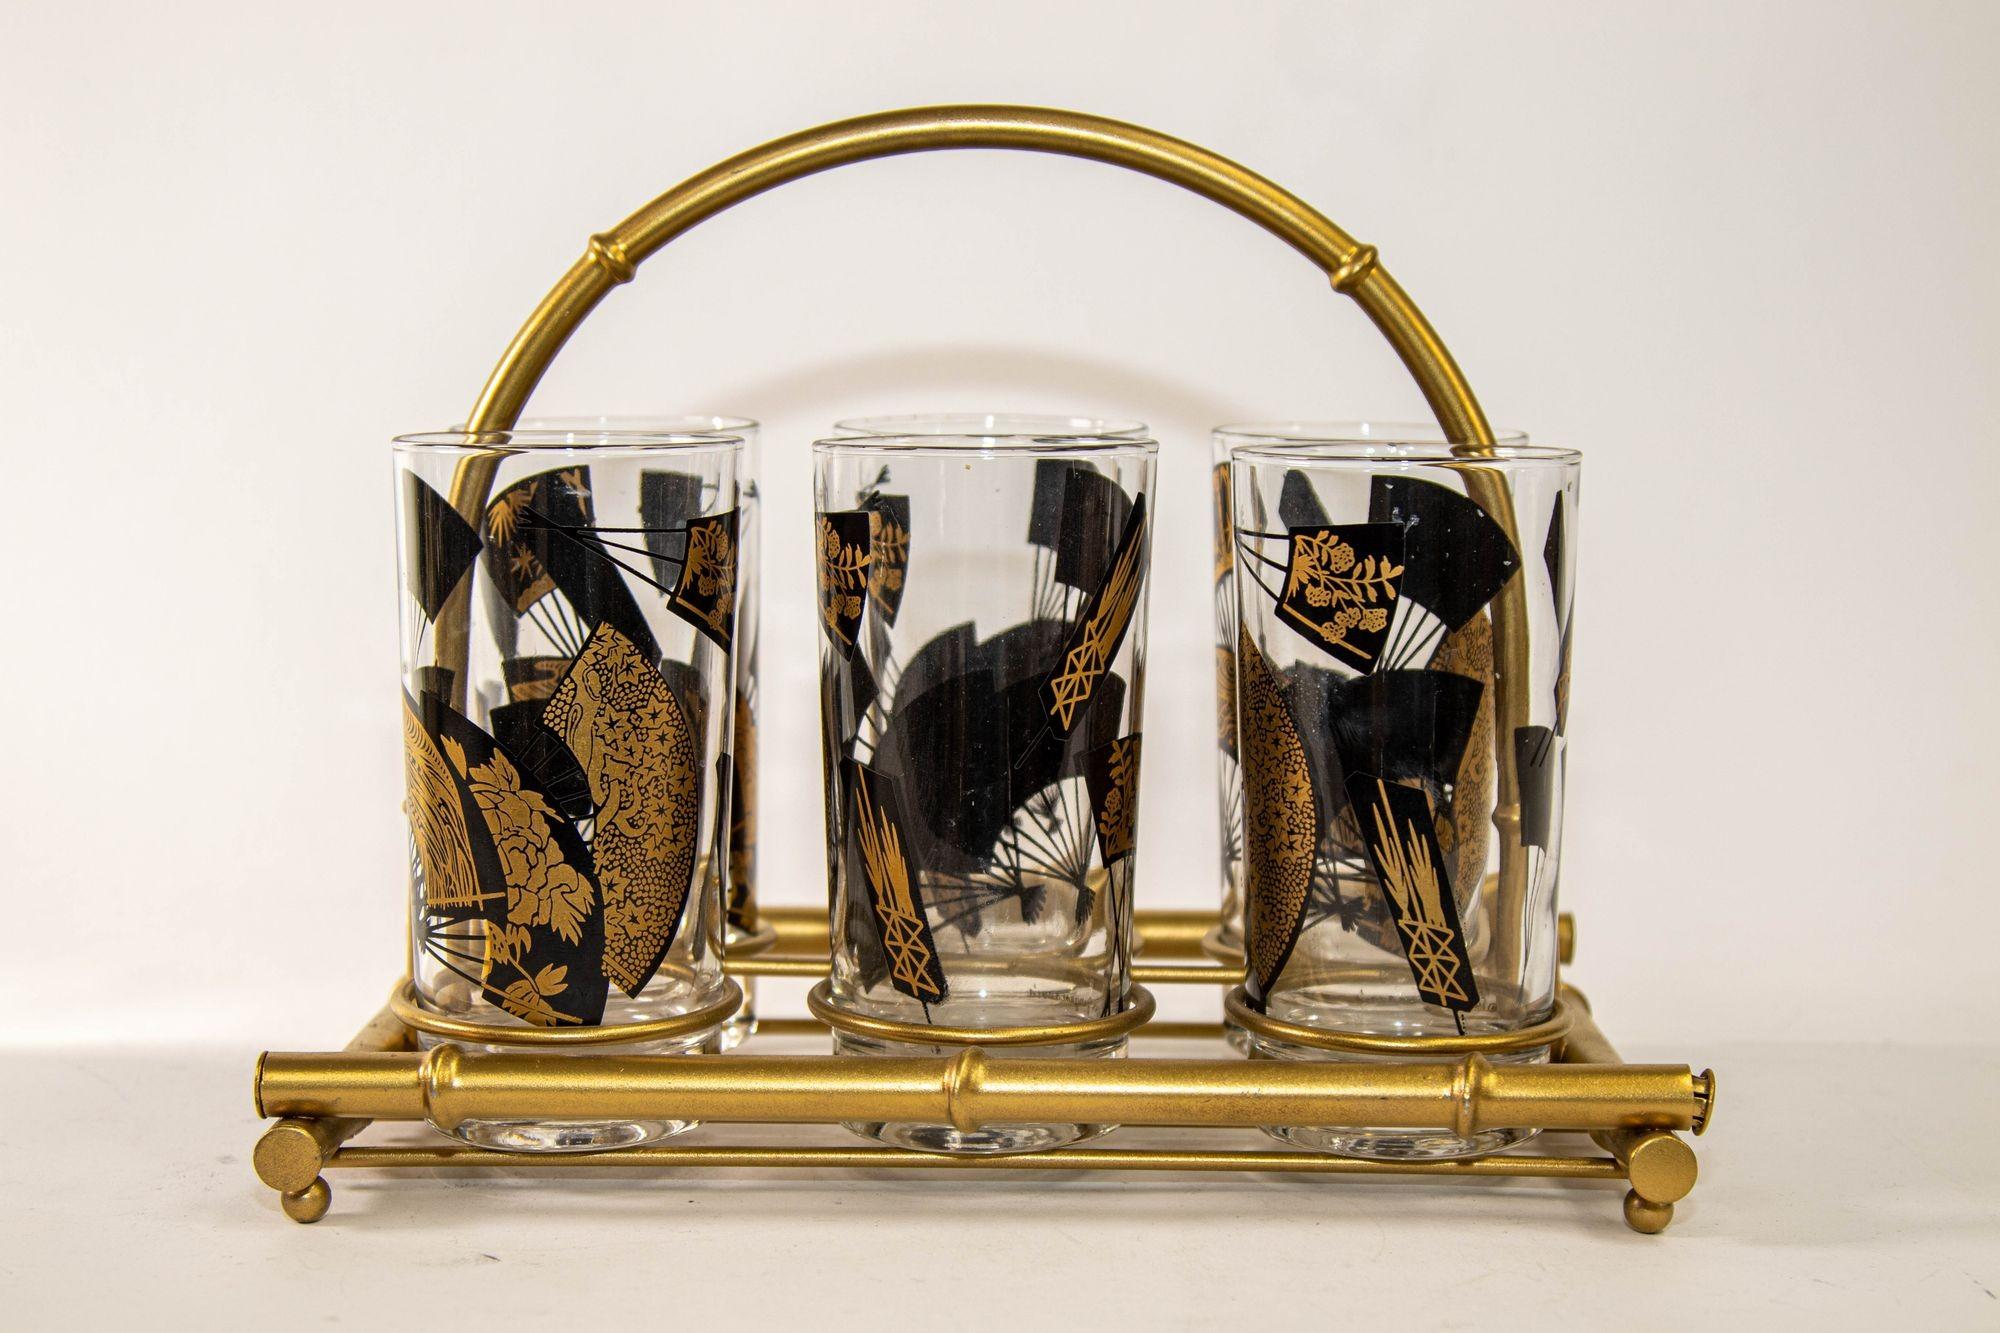 1970 Set of Six Highball Glasses Black and Gold by Jules Jurgensen's in Cart.
Elegant ensemble vintage de six verres highball dorés conçus par Gurgensen's vers 1976 avec chariot d'or dans un design de faux bambou.
Collectional rare Mid Century